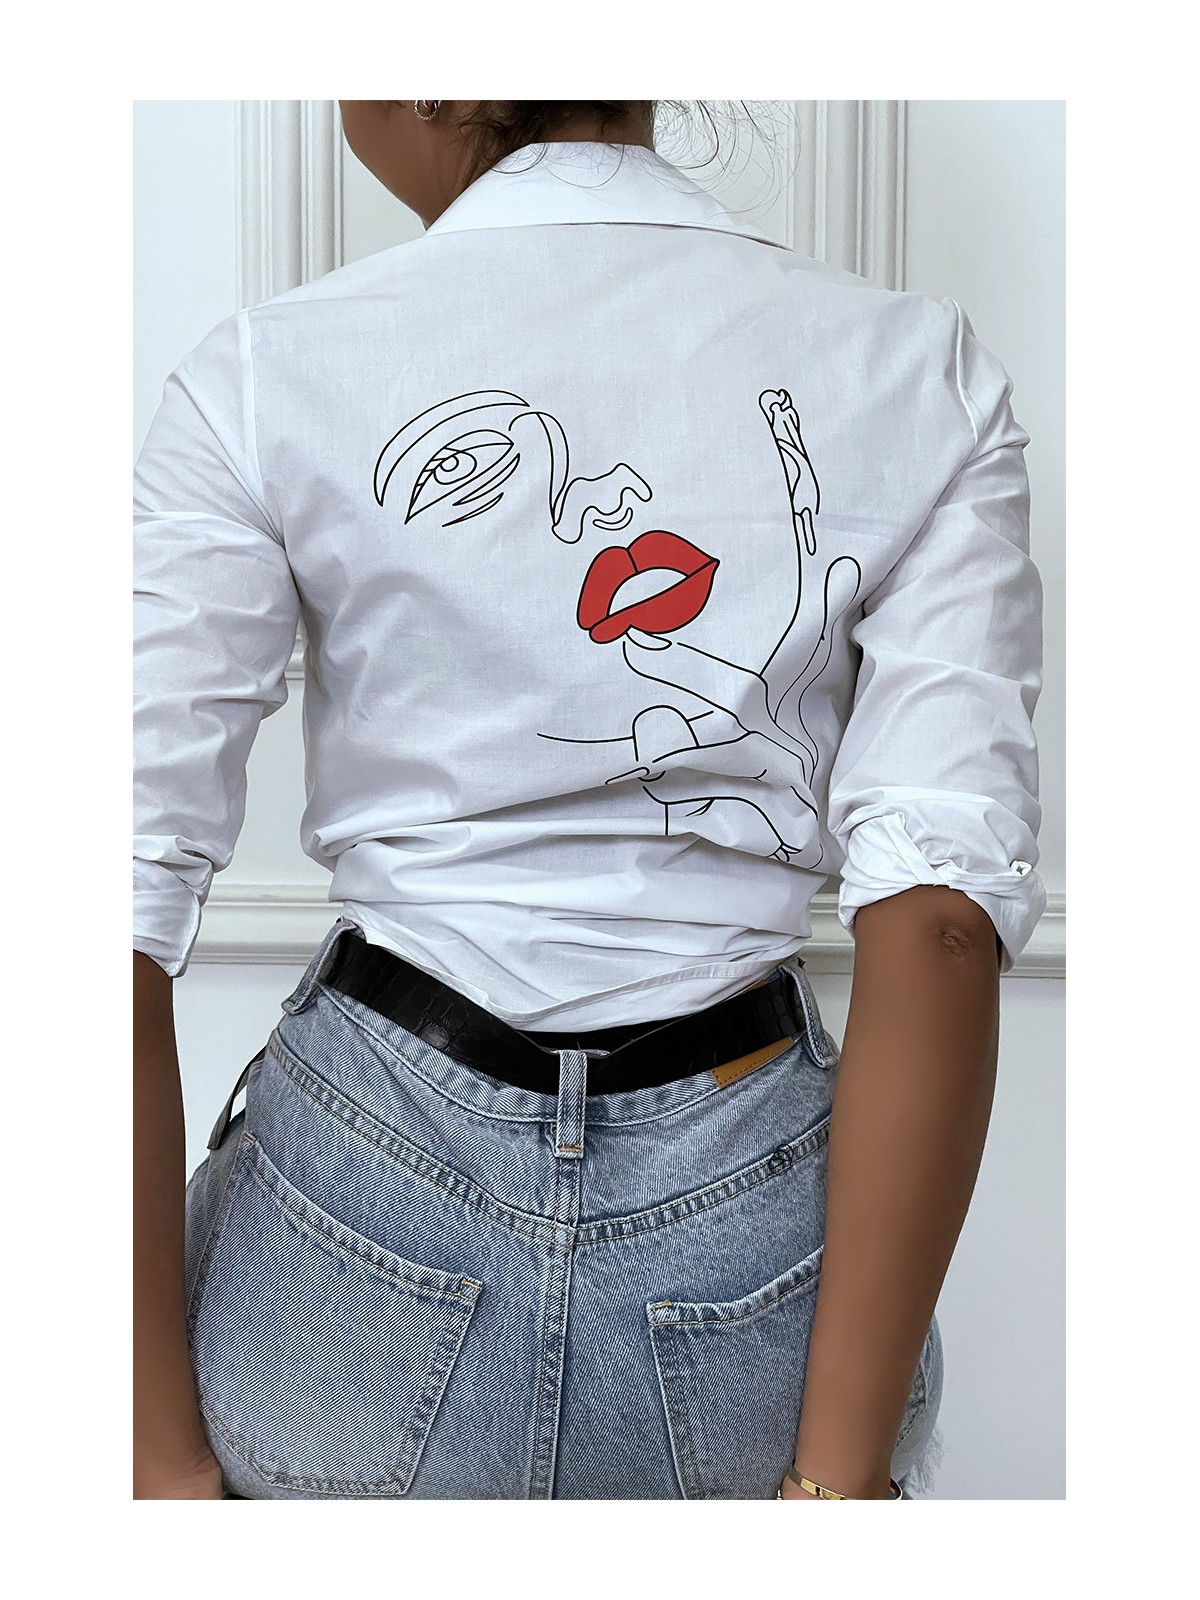 Chemise blanche cintré avec dessin au dos. Chemise femme - 1